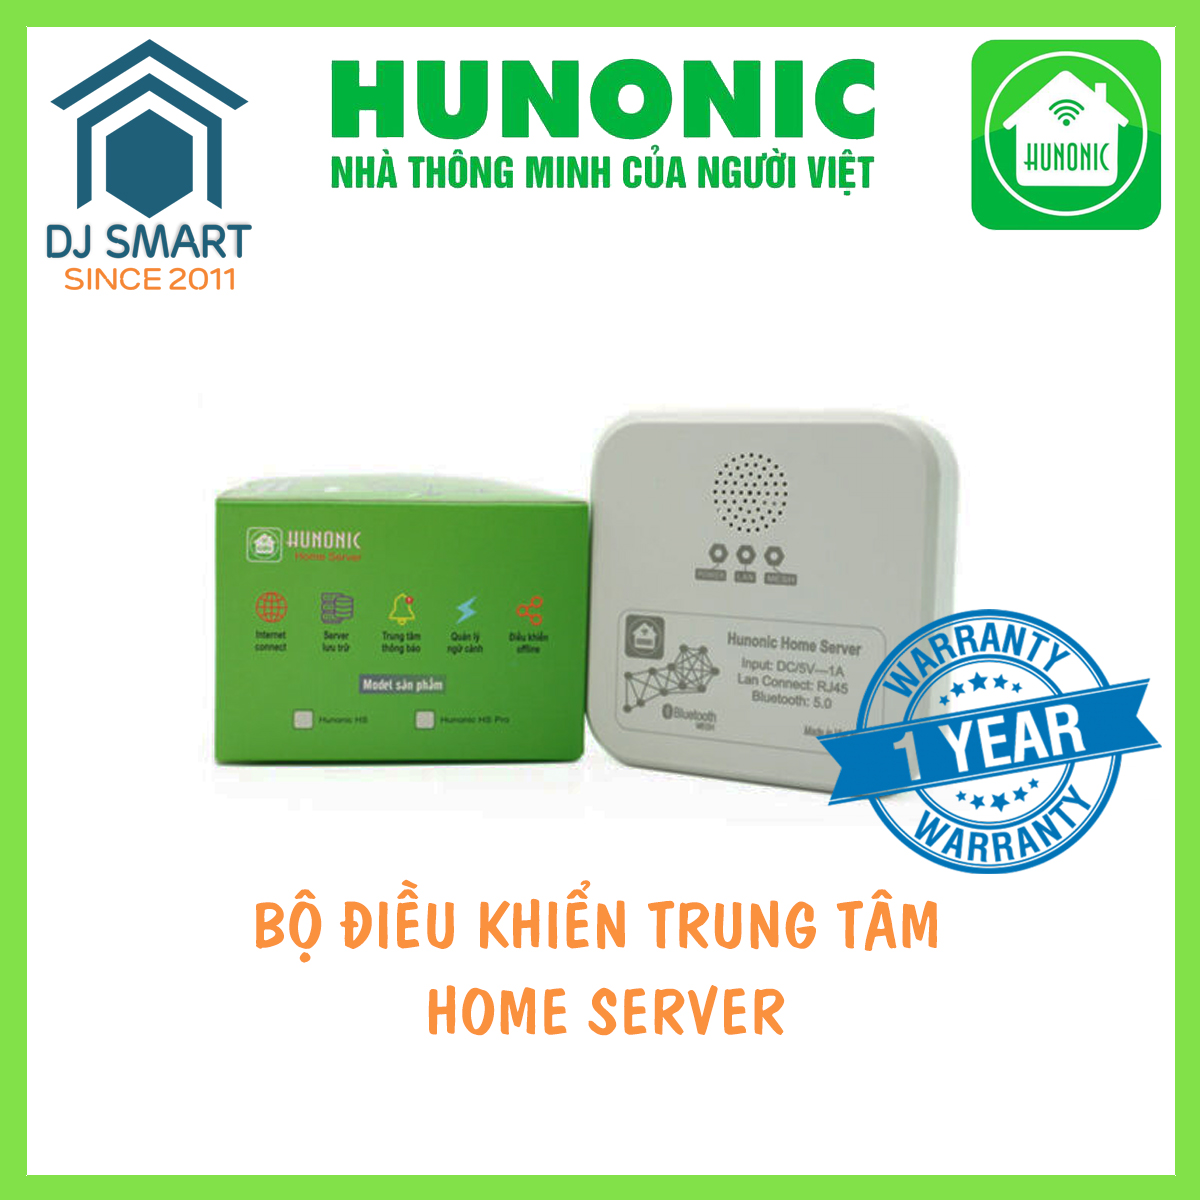 Bộ Điều Khiển Trung Tâm Smarthome - Hunonic Home Server - Công nghệ Bluetooth Mesh - Dễ Dàng Sử Dụng Và Lắp Đặt - Chinh Hãng Bảo Hành 12 Tháng